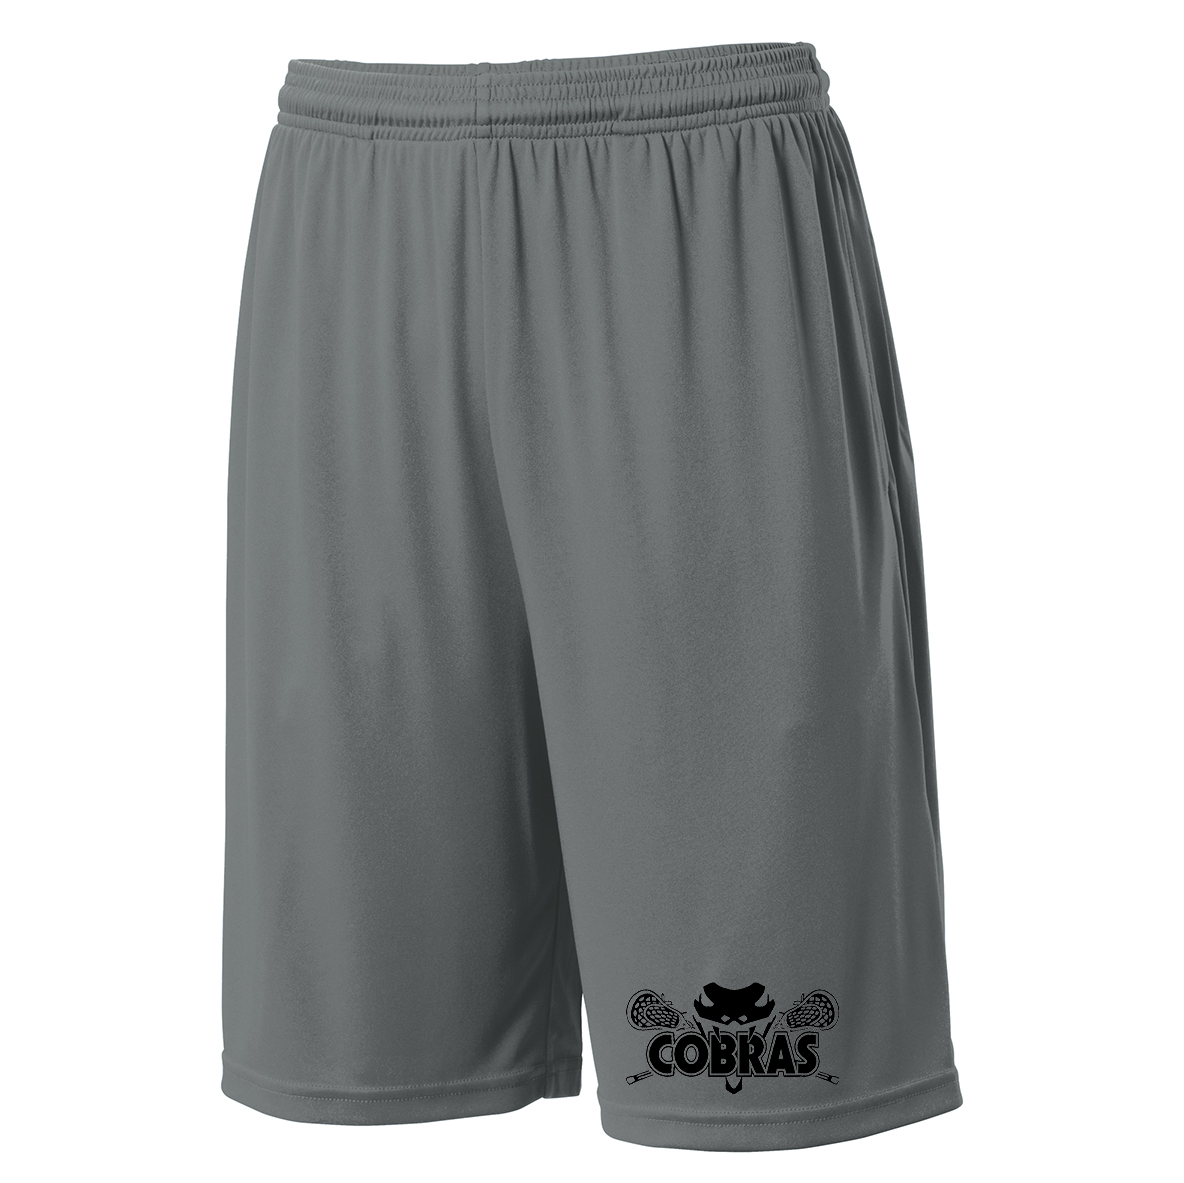 KC Cobras Lacrosse Shorts